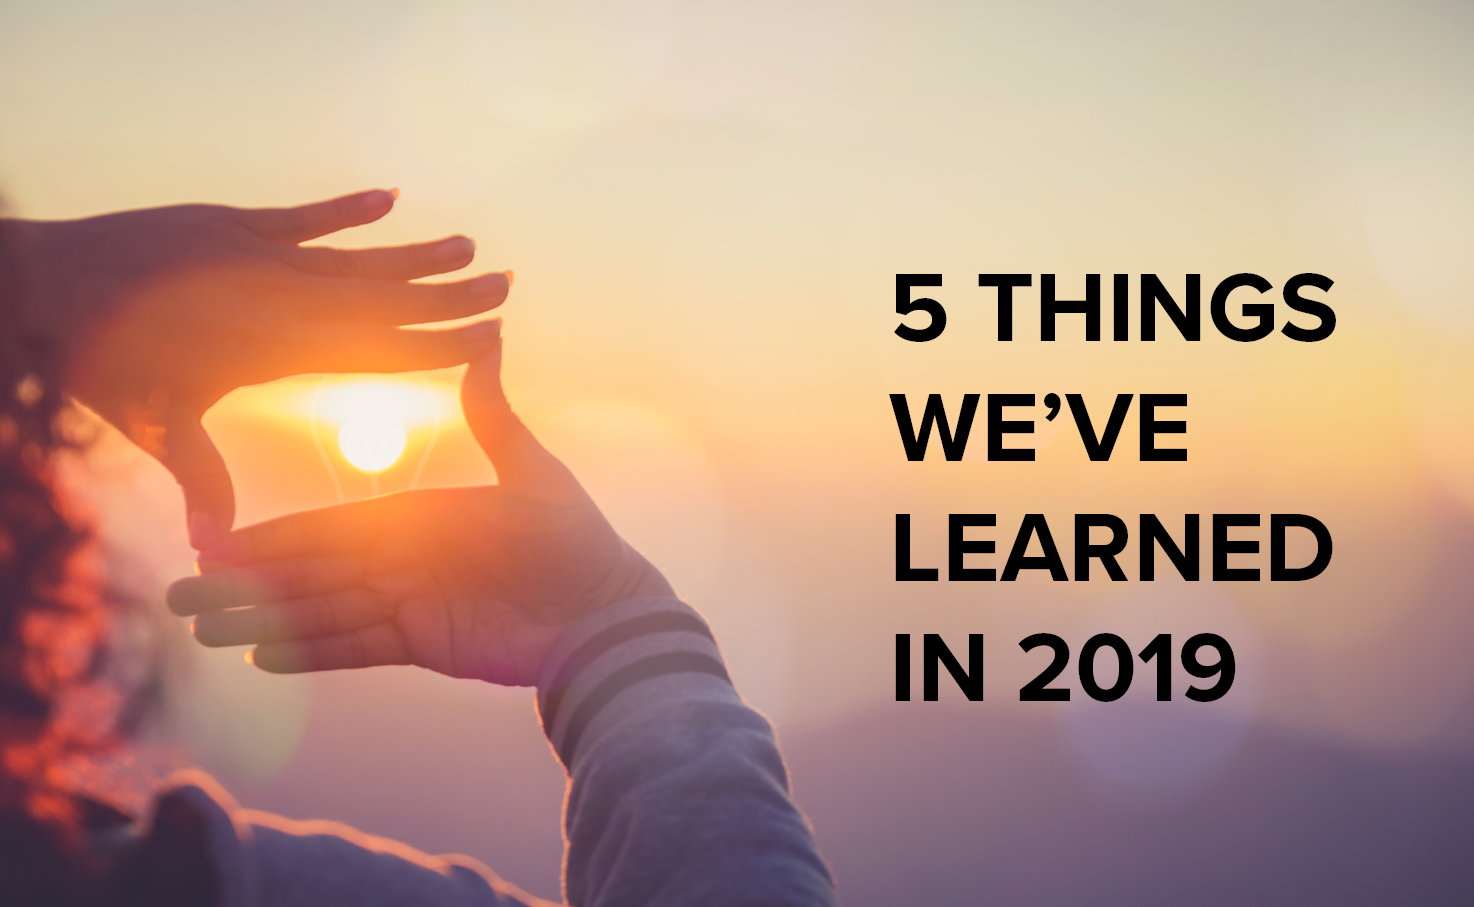 5 things we’ve learned in 2019